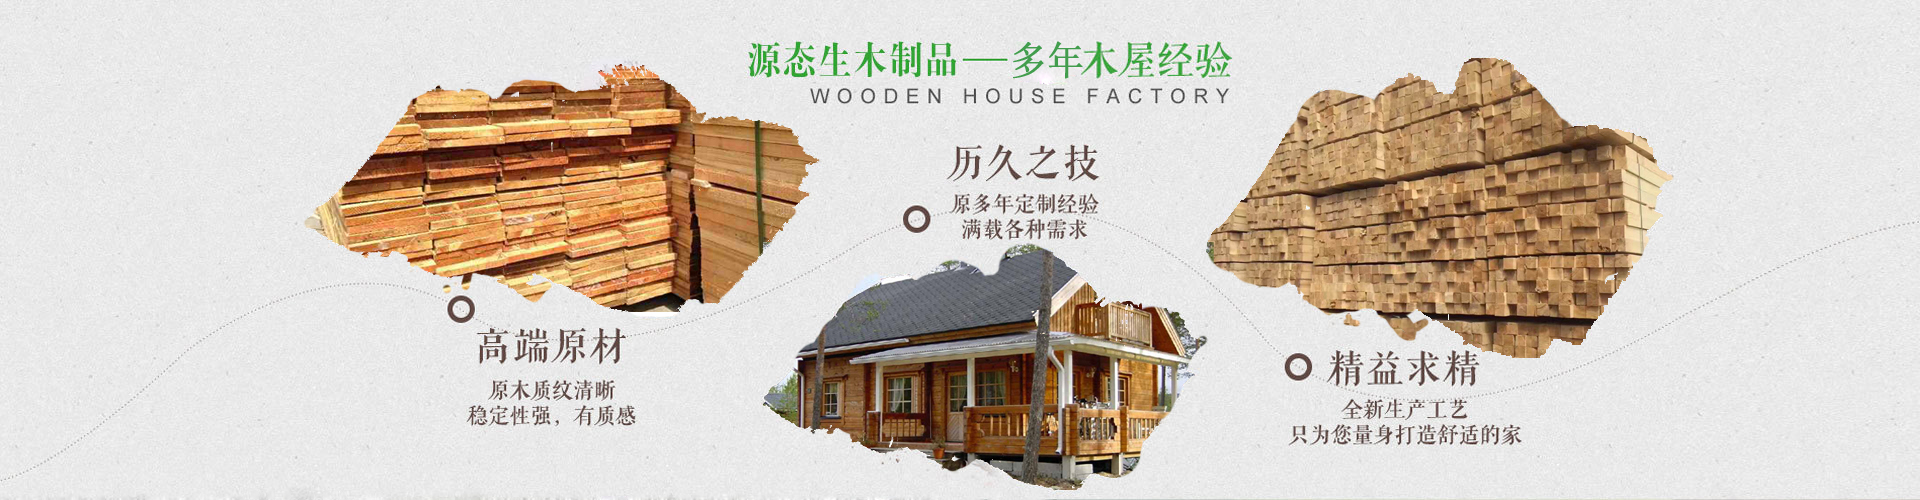 新疆防腐木生产厂家邀您宣宣樟子松木纯实木家具的知识